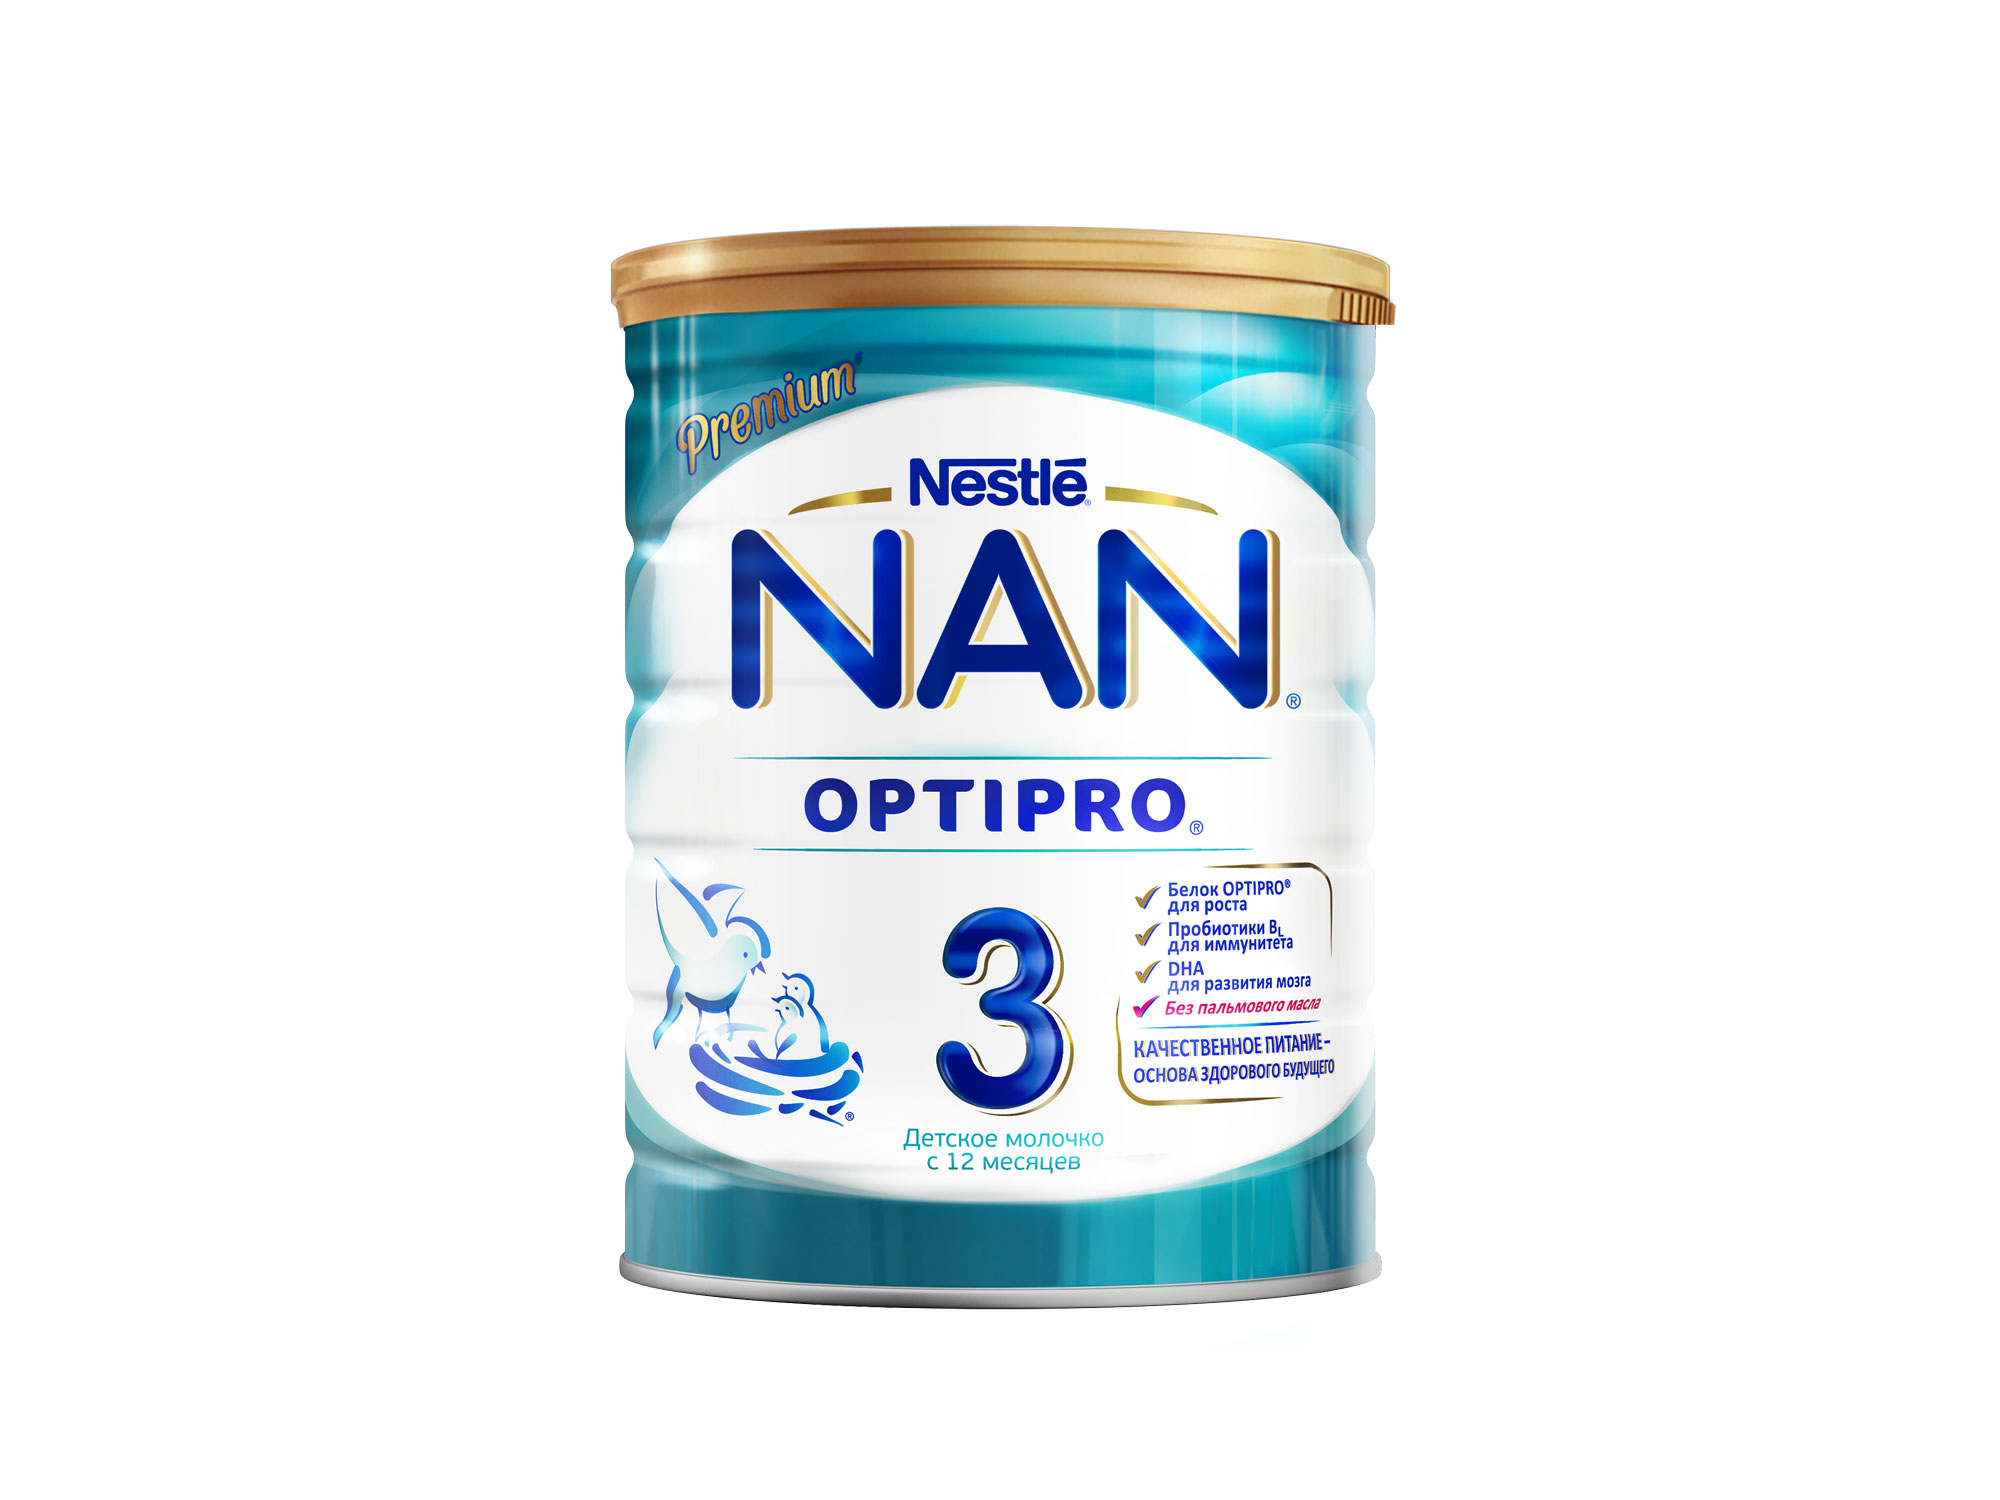 Нан 3 optipro "детское молочко" напиток молочный сухой с пробиотиками для детей с 12 месяцев 800г